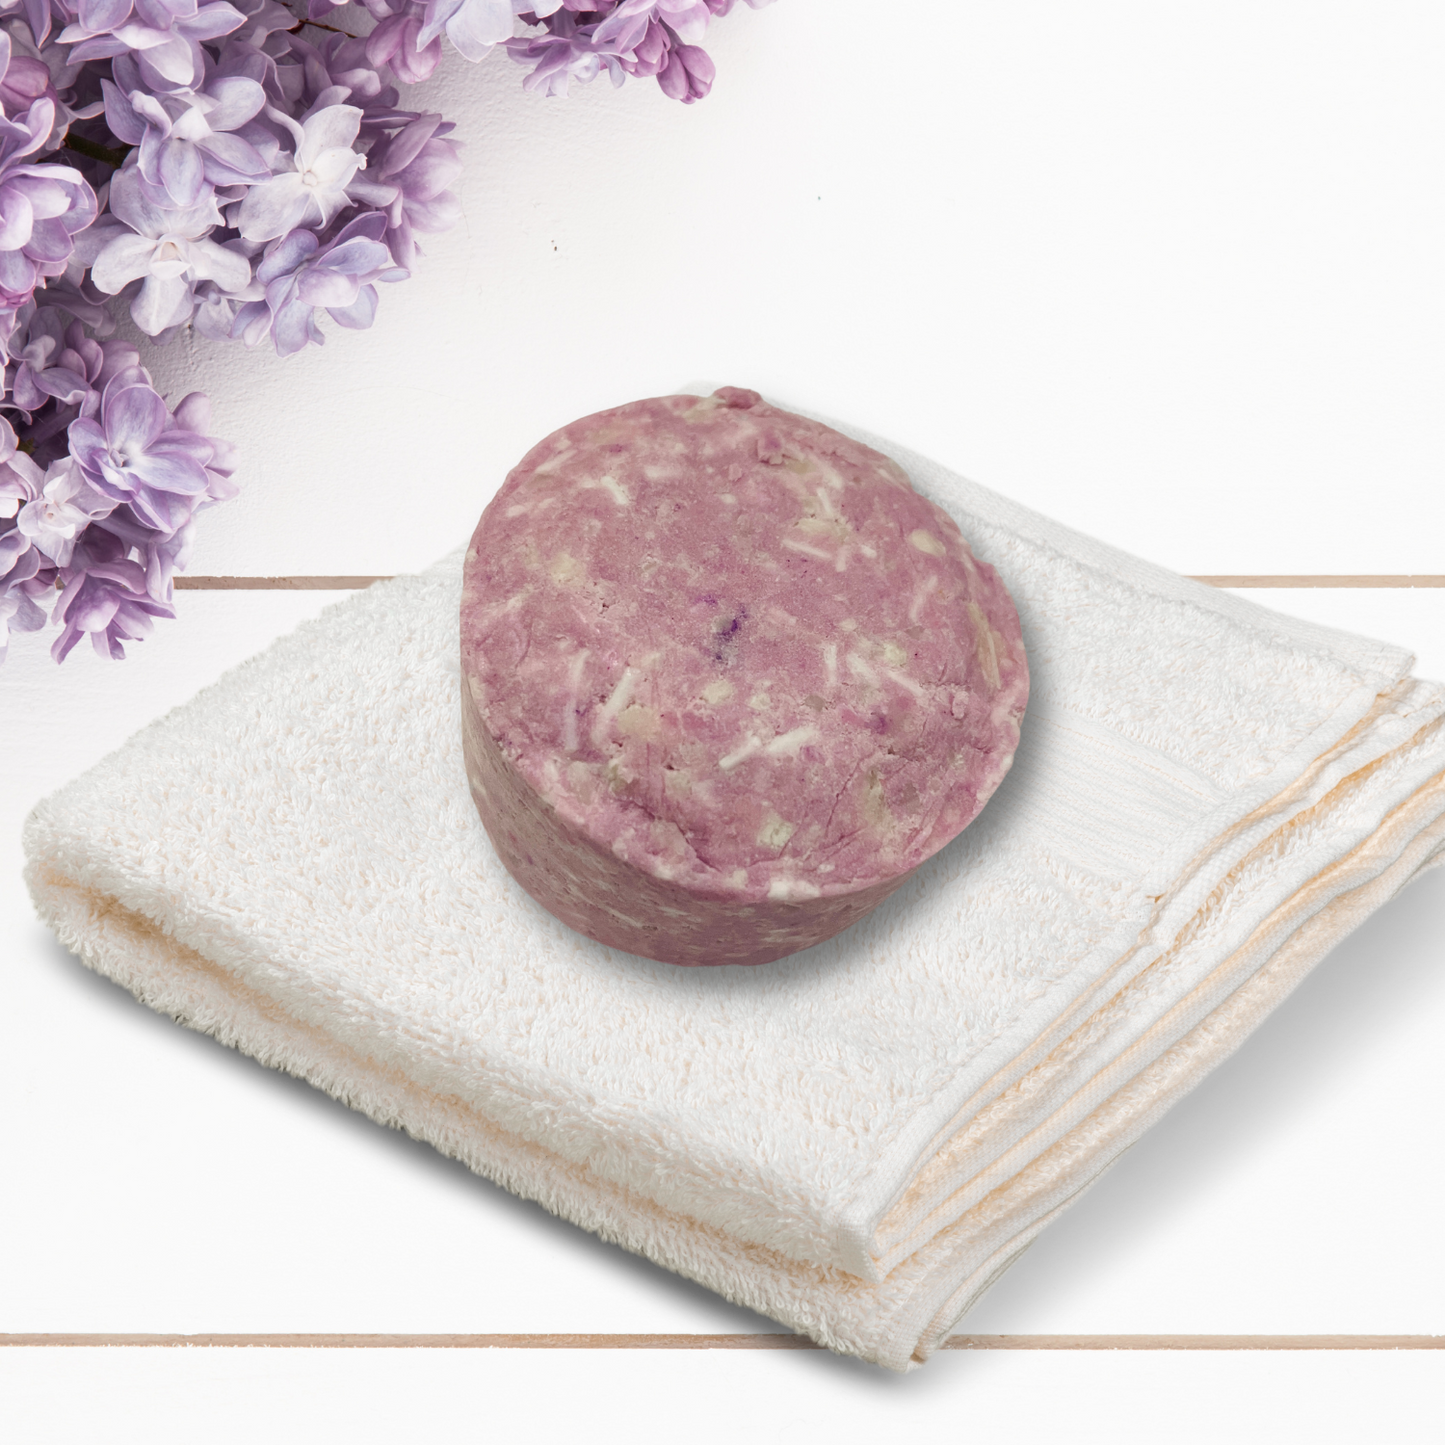 Mom’s Lilac Blossom Handmade Shampoo & Conditioner Bars